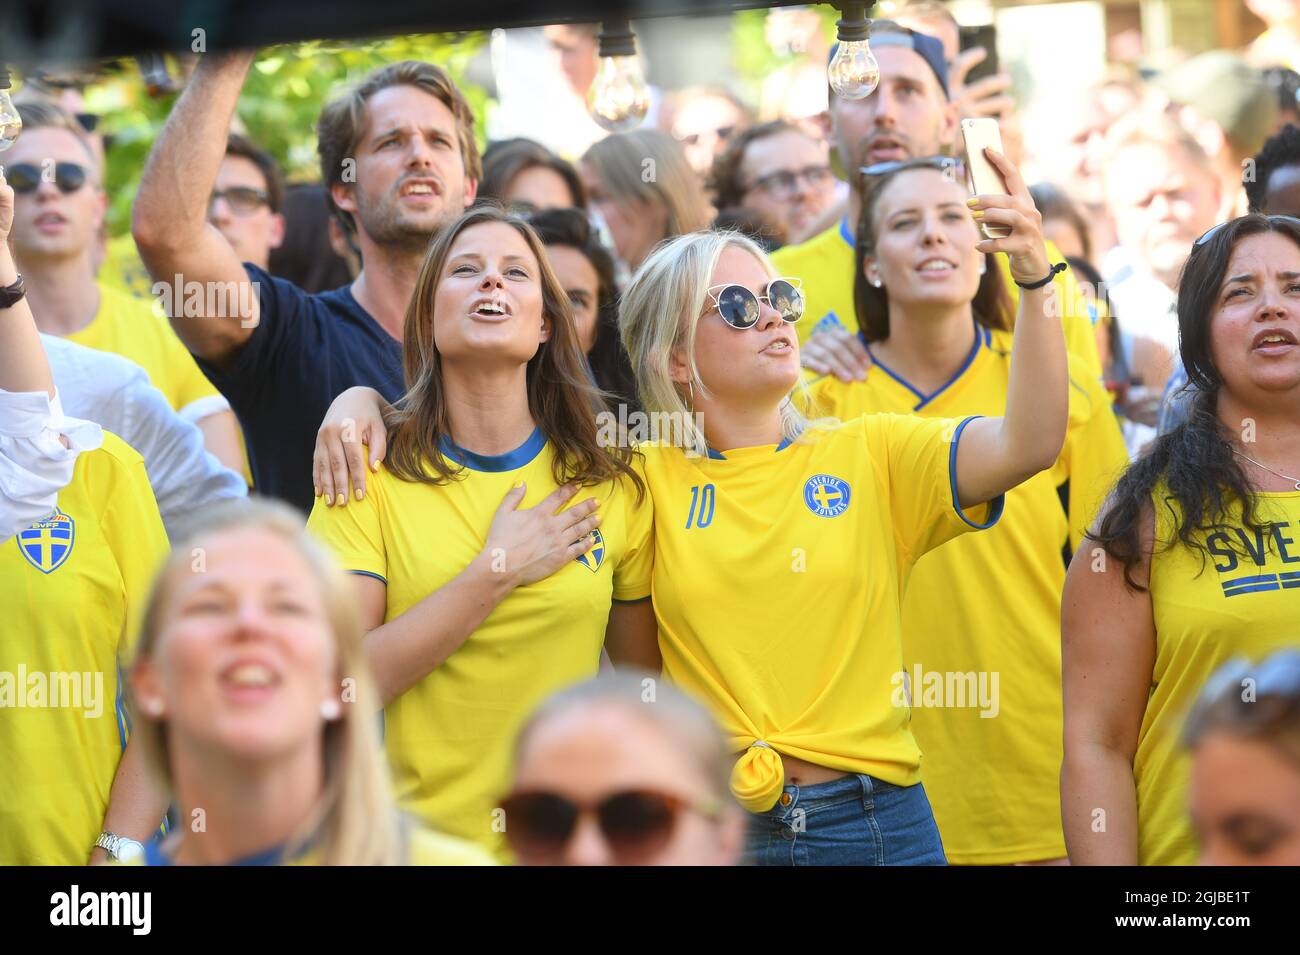 Schwedische Fußballfans machen am 27. Juni 2018 ein Selfie, während sie Schweden während des Fußballspiels der Gruppe F im Russland 2018 auf einer großen Leinwand im Freien in Norra Bantorget im Zentrum von Stockholm, Schweden, zusehen, wie sie gegen Mexiko spielen. Foto: Fredrik Sandberg / TT / Code 10080 Stockfoto